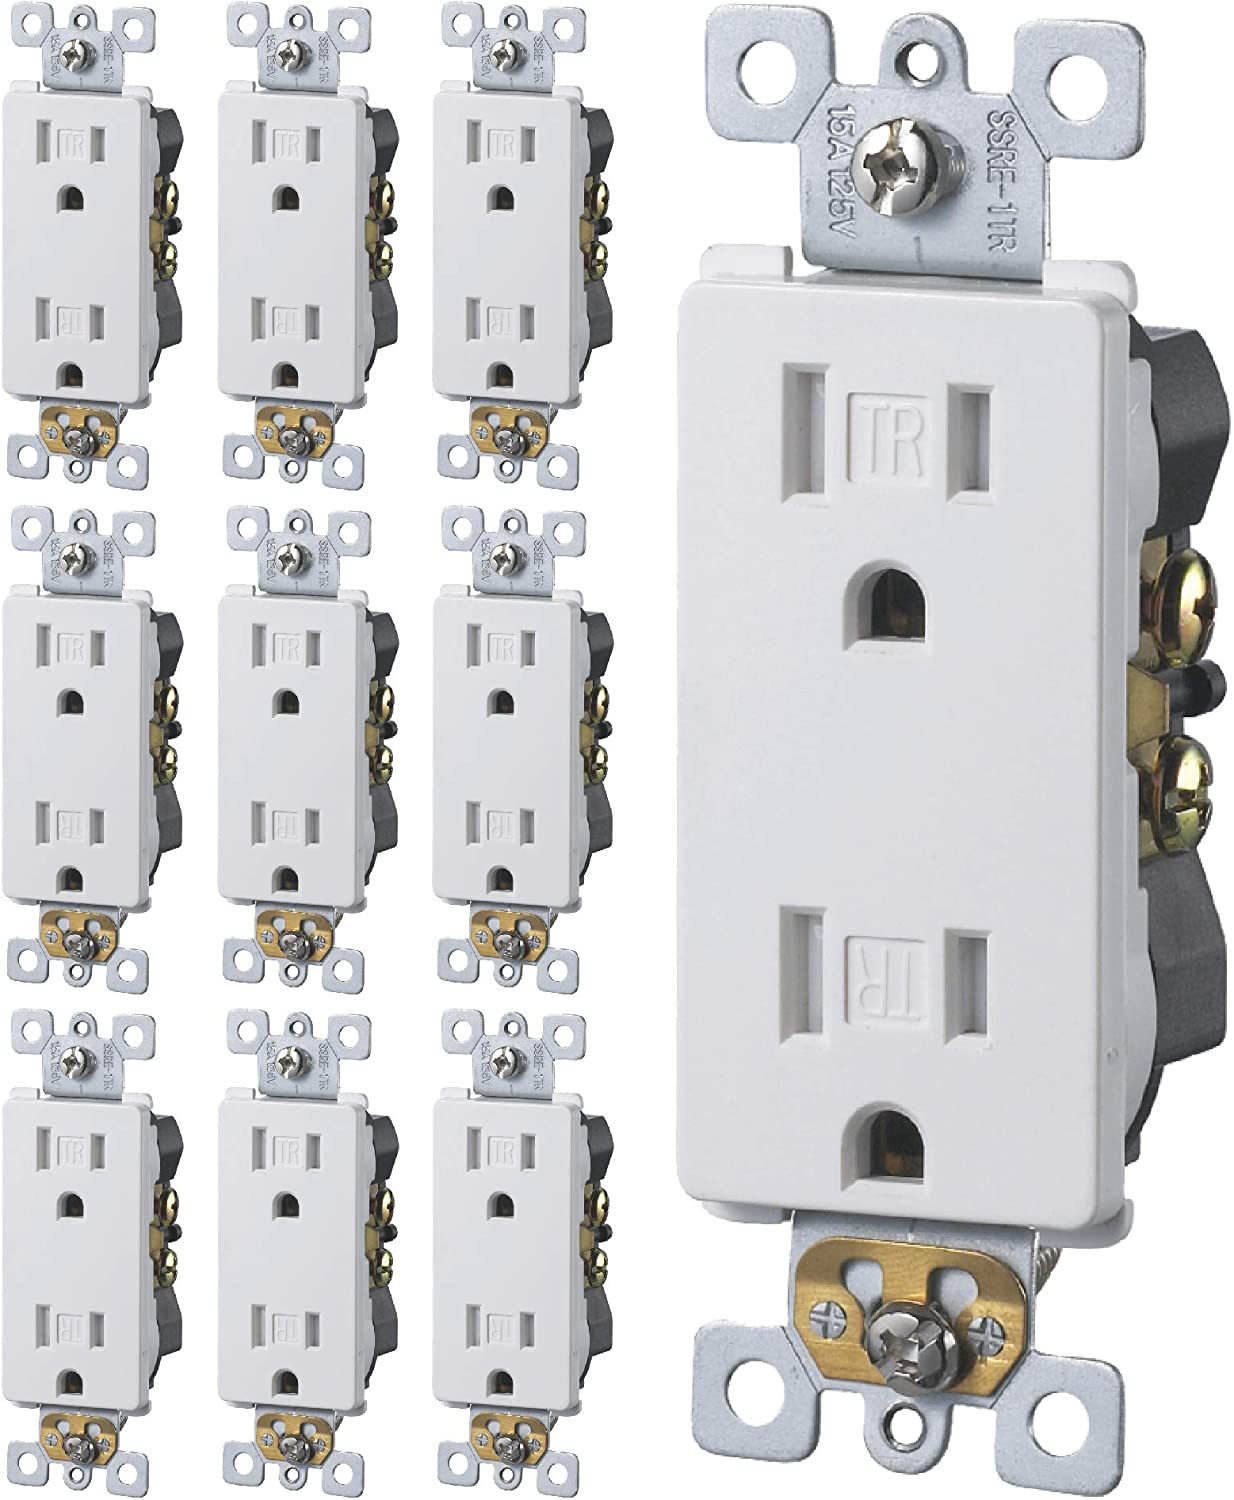 15 Amps Tamper Resistant Outlet